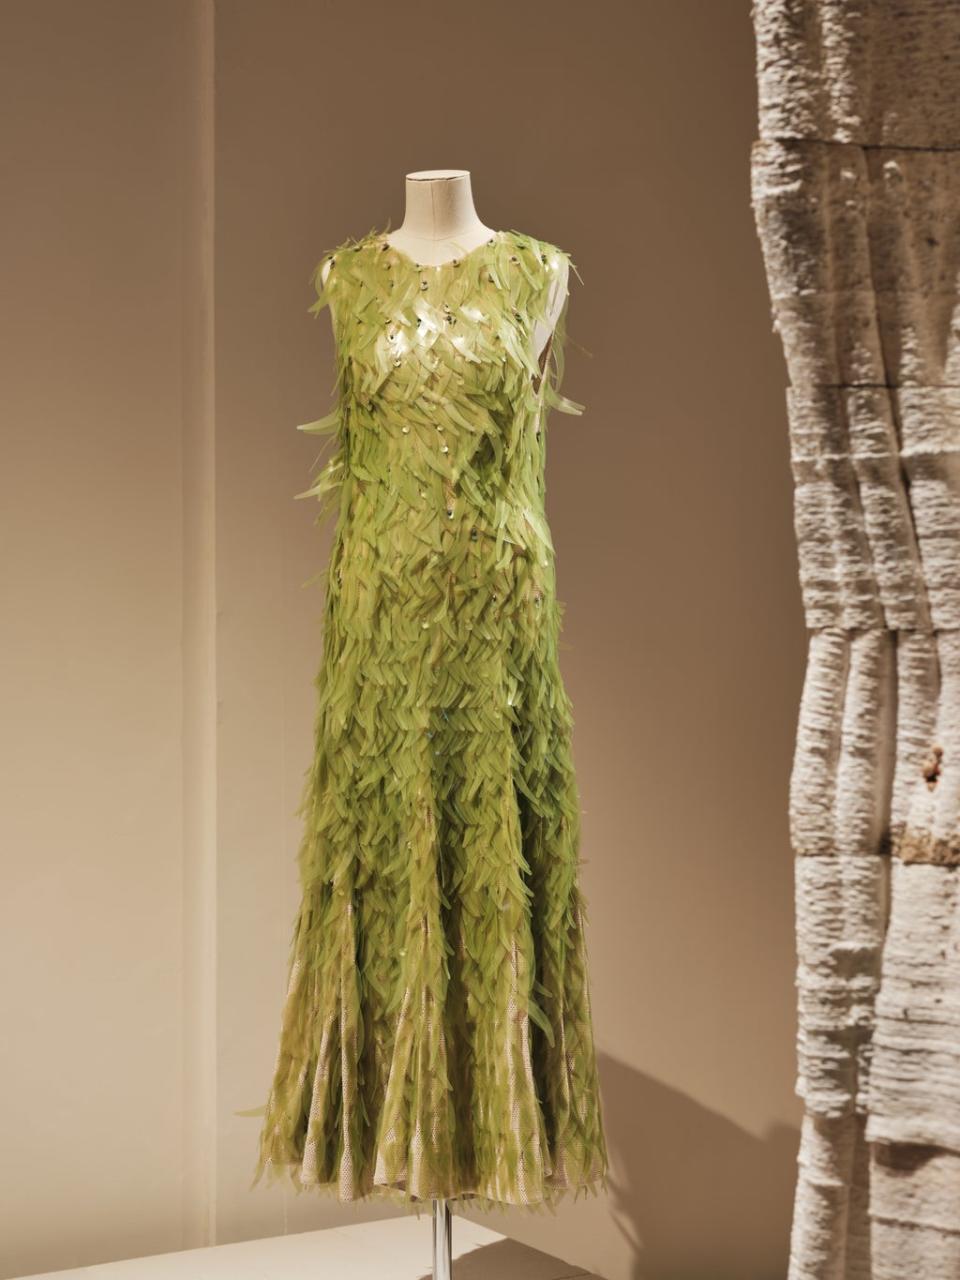 The algae-sequinned dress (Felix Speller)